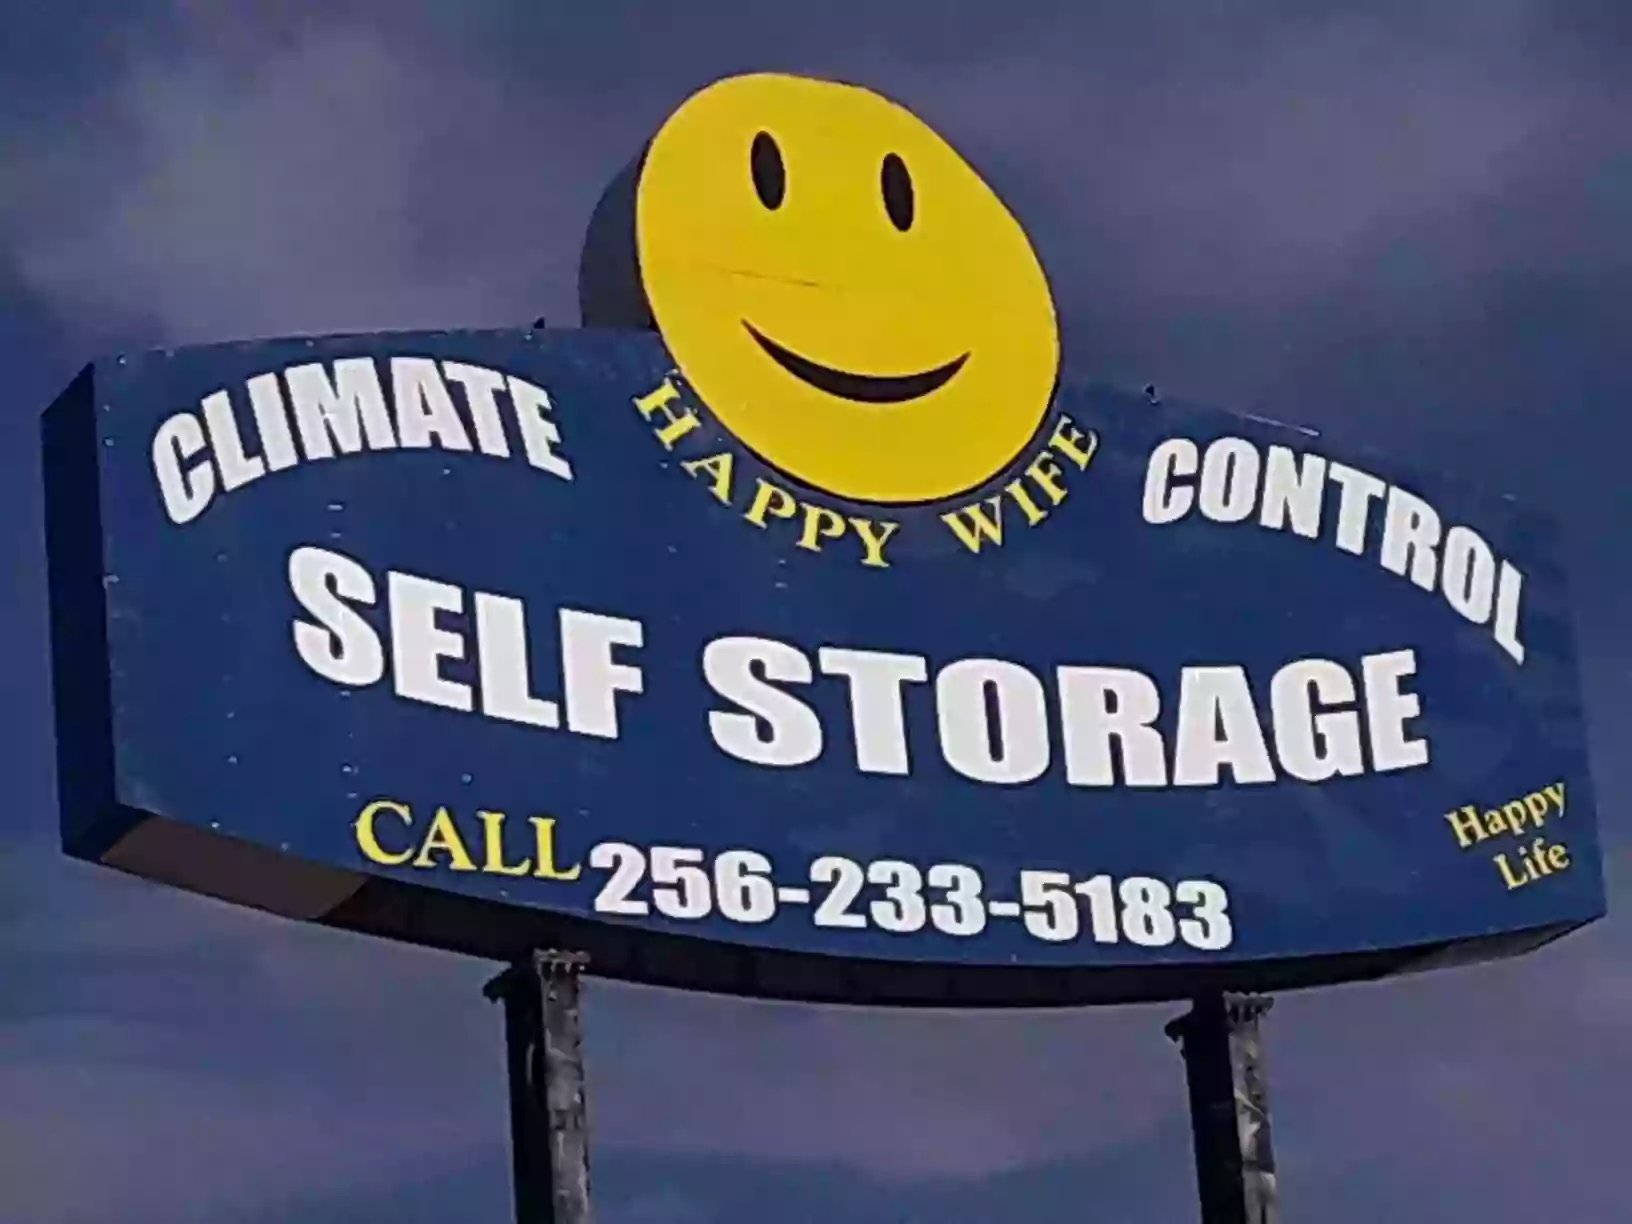 Happy Wife Mini Storage Warehouse